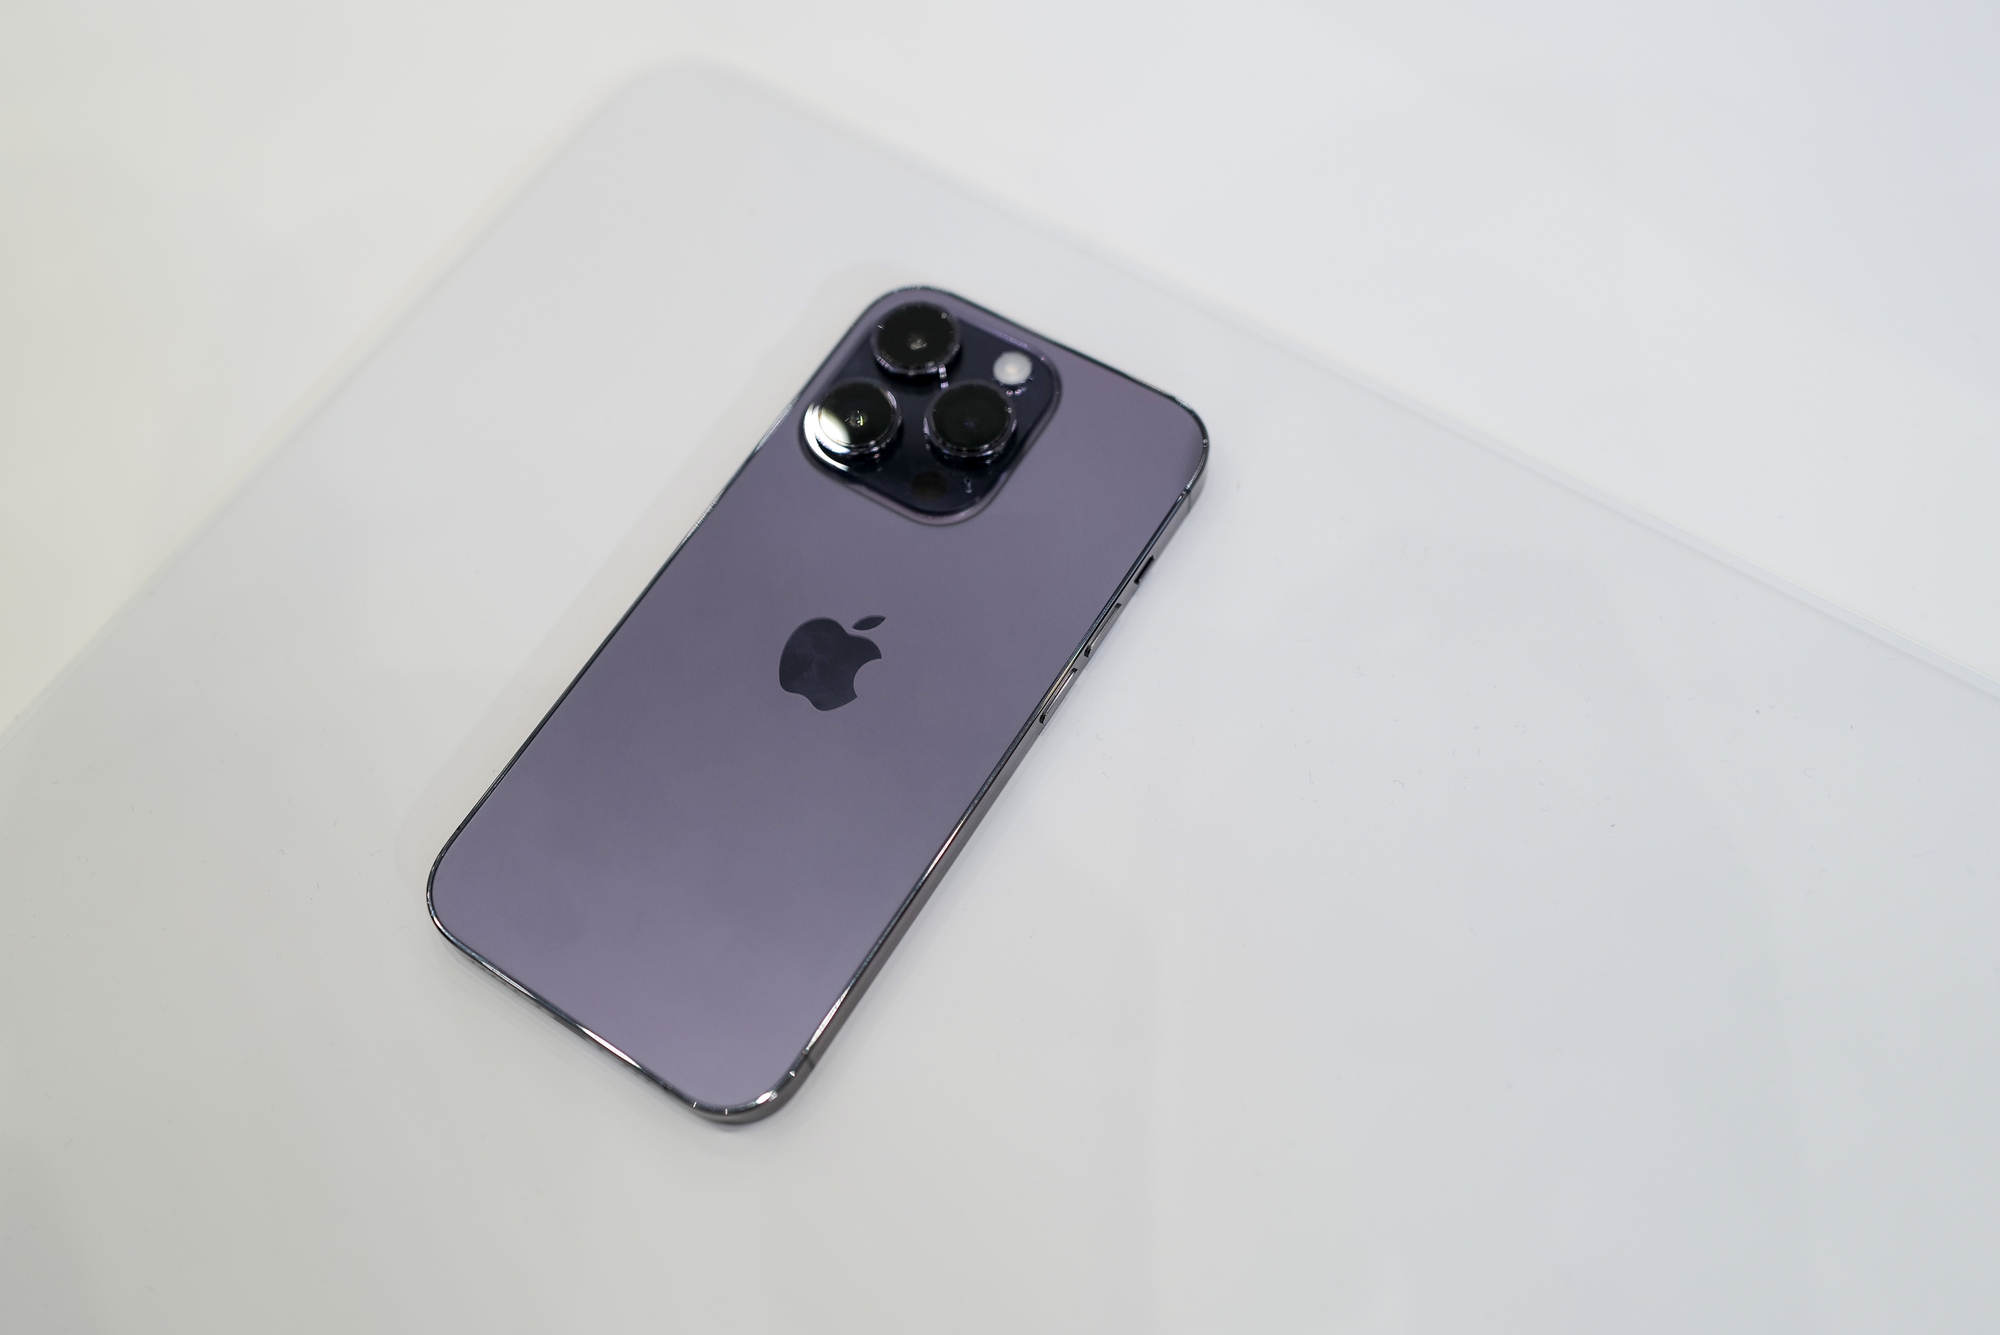 Điện thoại iPhone 14 Pro màu tím chính là thiết bị bạn đang tìm kiếm. Với thiết kế đẹp và màn hình OLED siêu sáng, bạn sẽ thấy rõ nét mọi chi tiết trên điện thoại. Ngoài ra, các tính năng của máy ảnh và âm thanh tuyệt vời cũng sẽ khiến bạn phấn khích. Hãy xem hình ảnh để khám phá nó nhé.